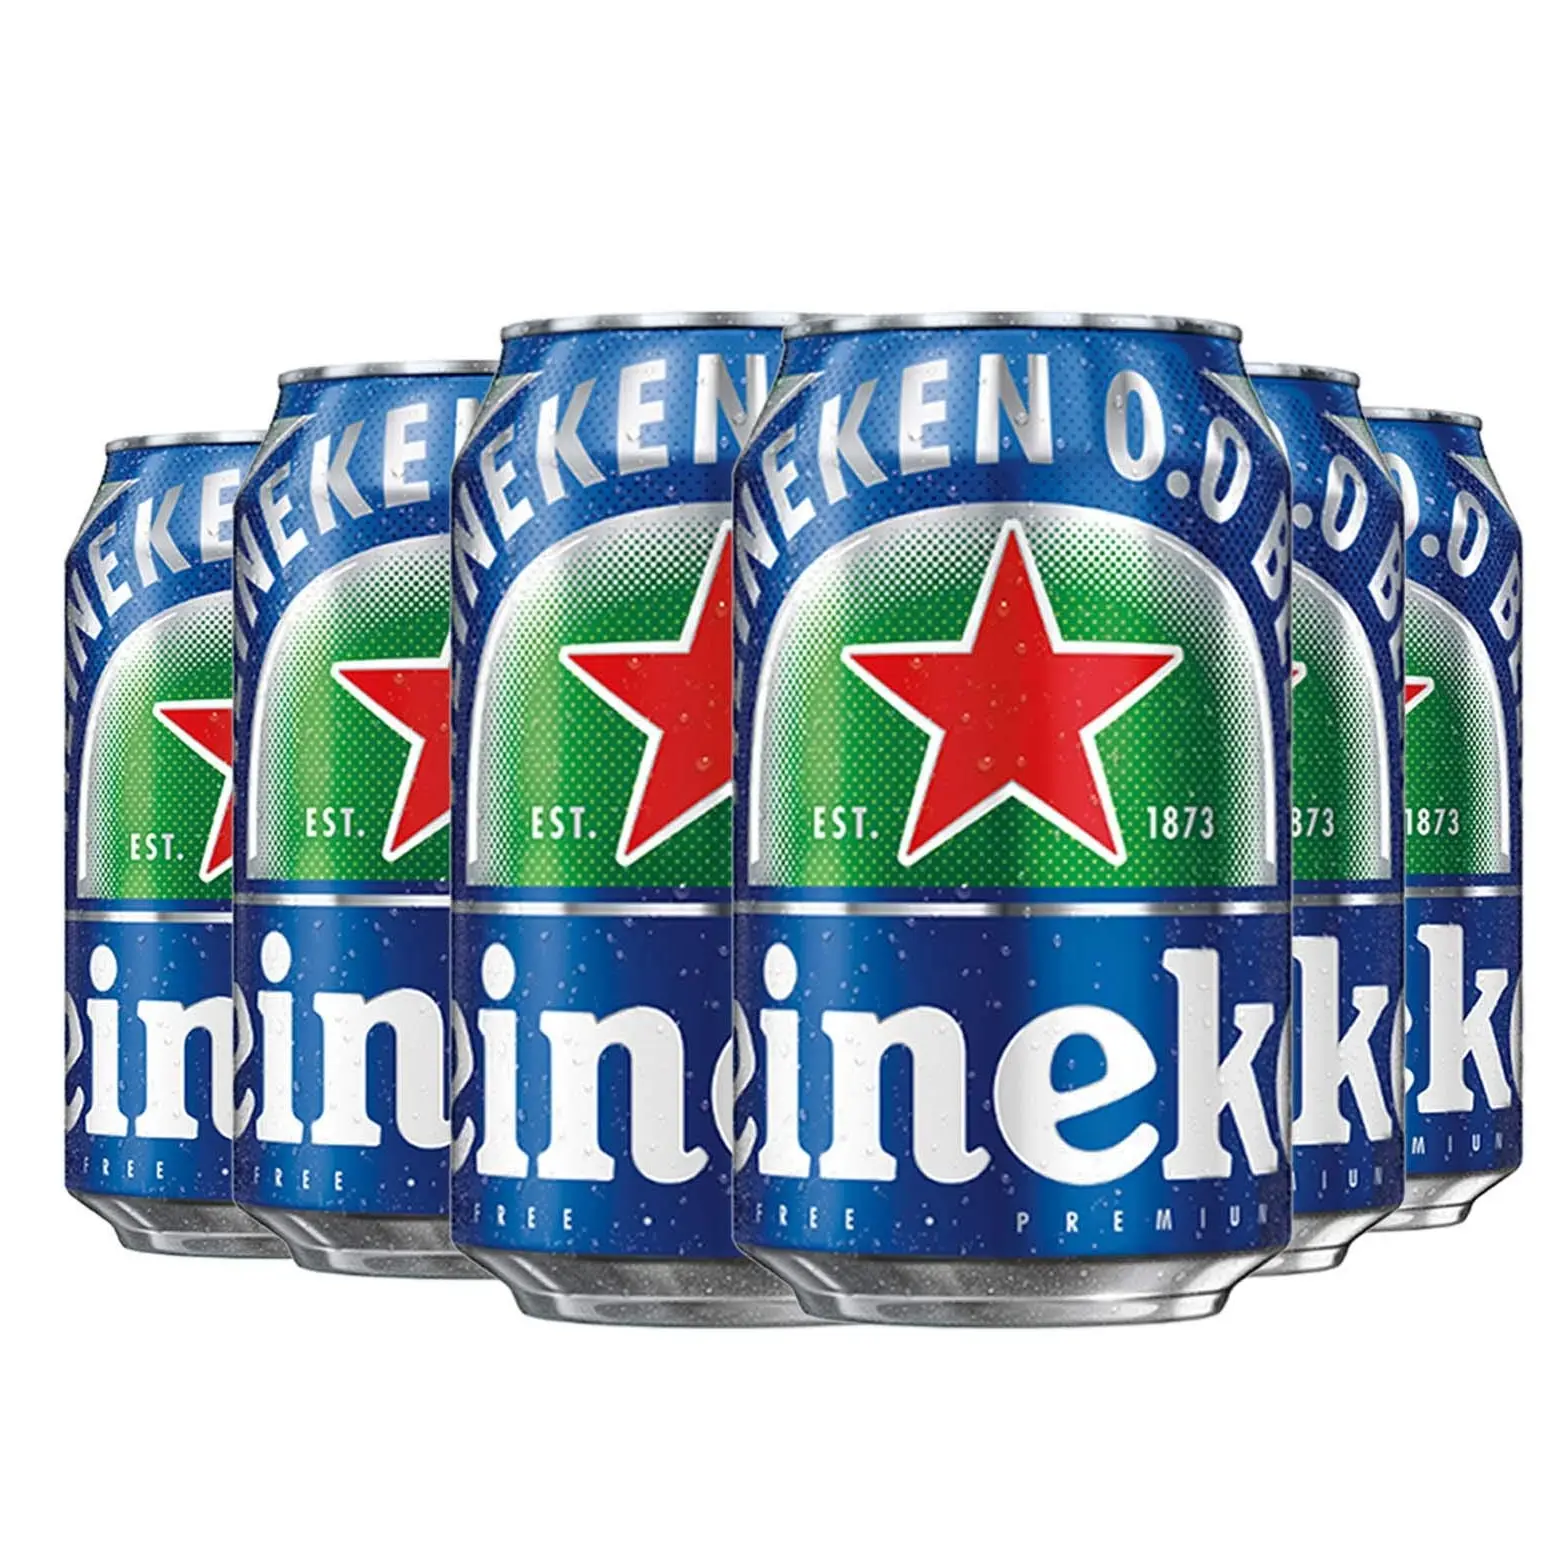 100% di pura qualità Heineken Premium più grandi bottiglie di birra 6x330ml al miglior prezzo all'ingrosso a buon mercato